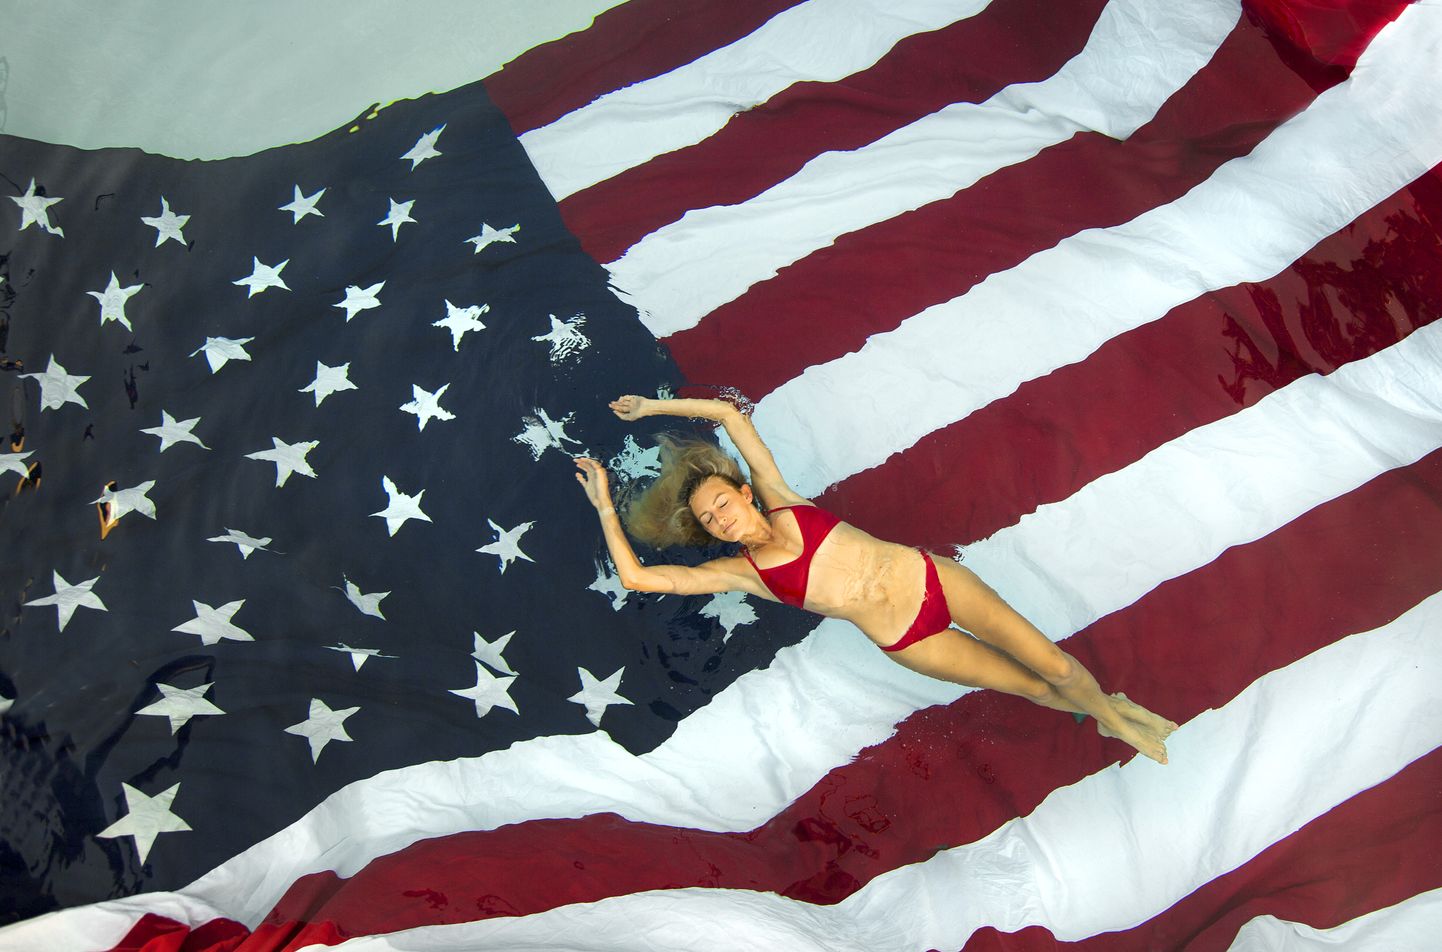 Bikiinides naine USA lipu kohal.